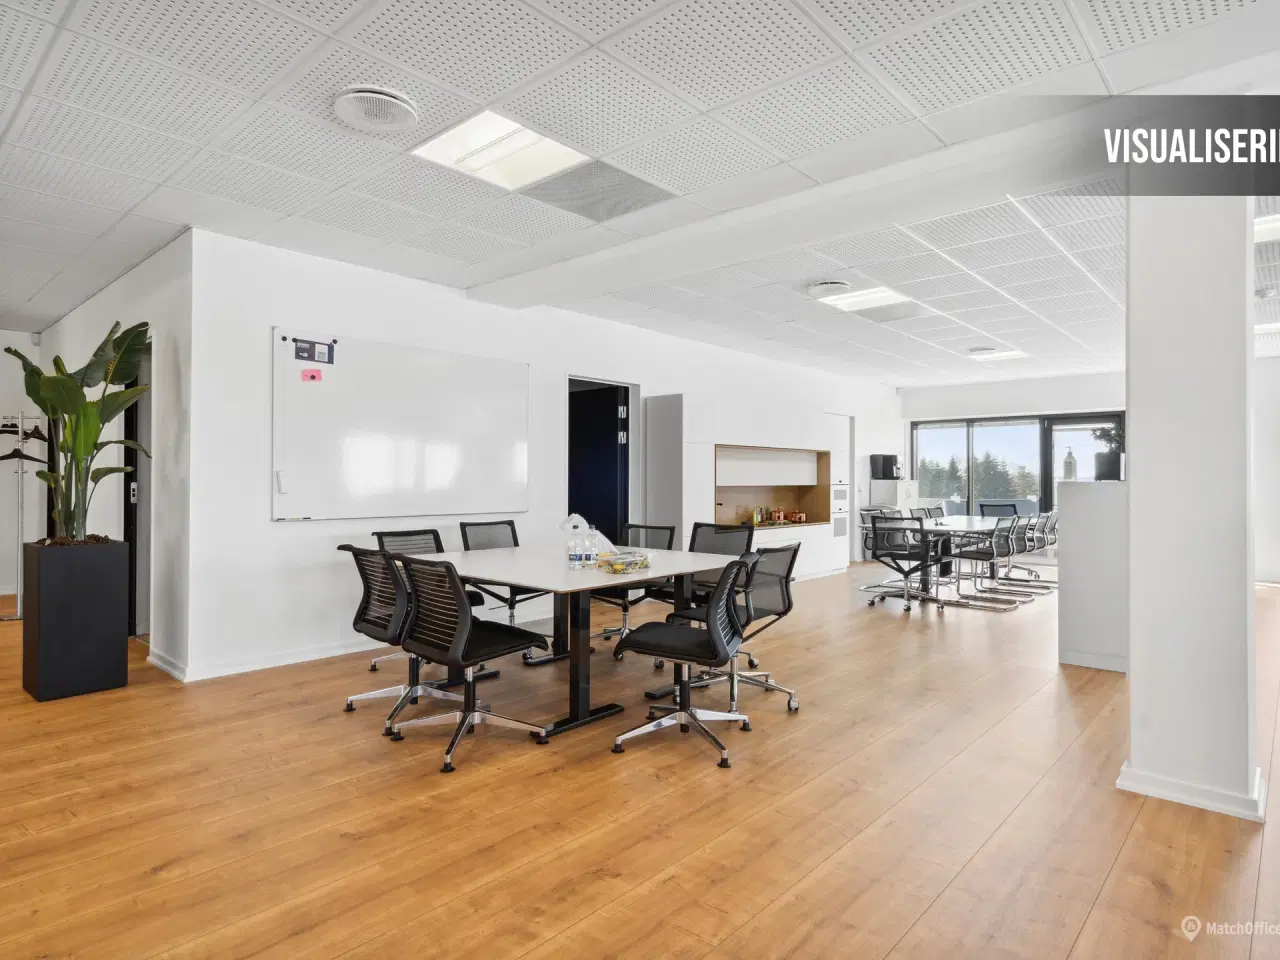 Billede 7 - 342 m² kontor beliggende i meget præsentabel kontorejendom